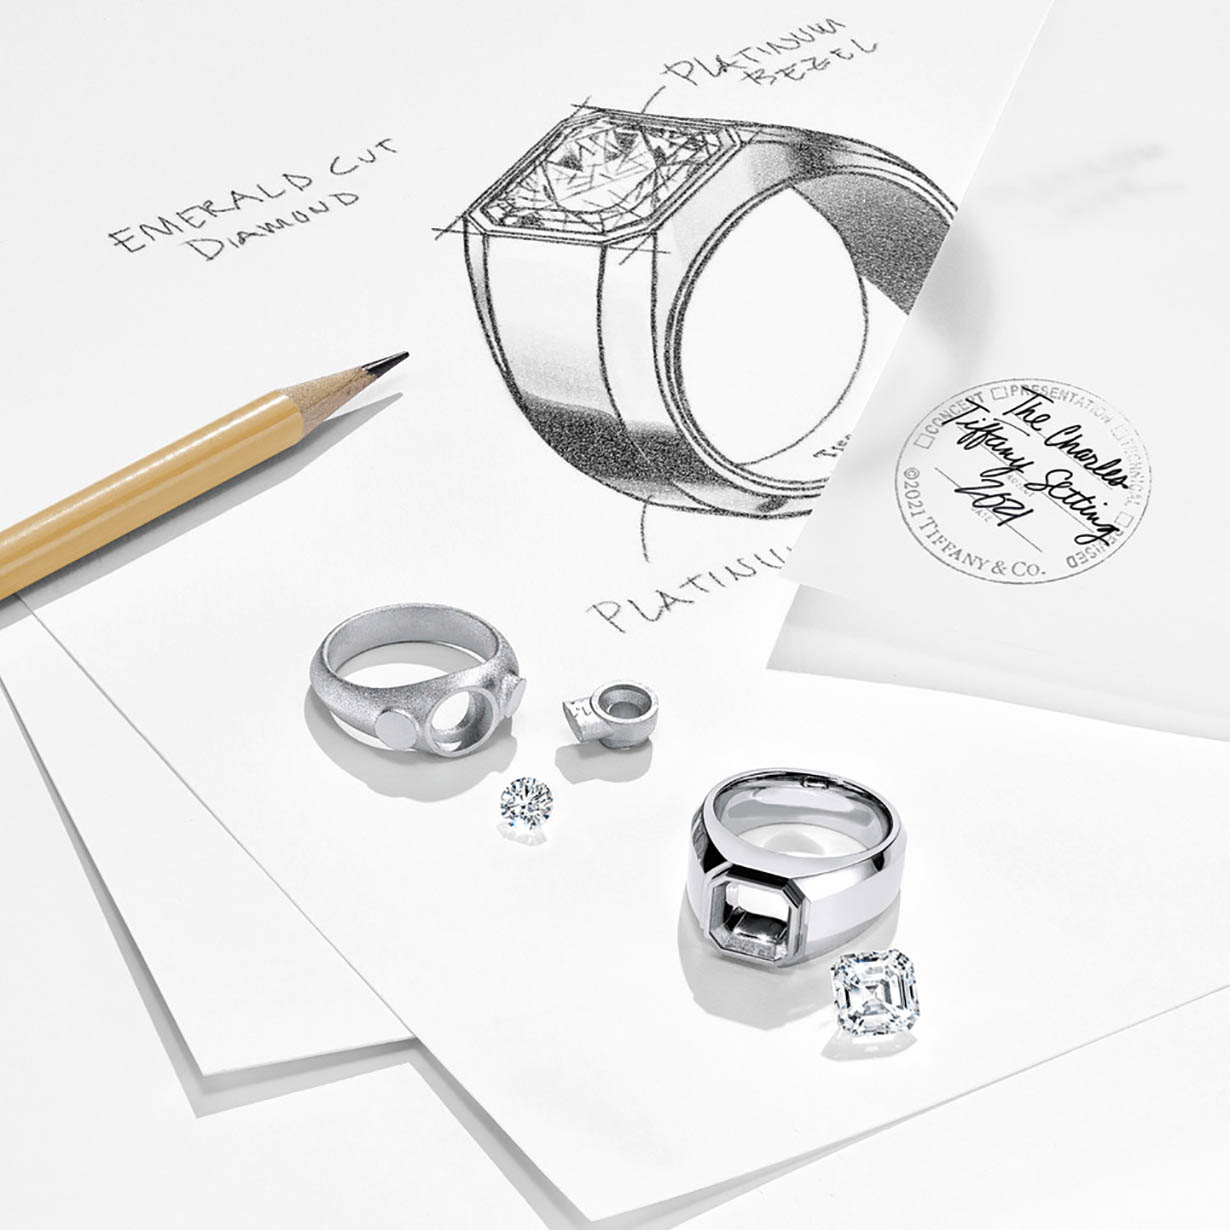 Šperkařská značka Tiffany & Co. teď ohlásila revoluční krok, který radikálně změní pohled na velkou životní událost – zásnuby. Poprvé ve své 184leté historii uvádí na trh zásnubní prsten pro muže.